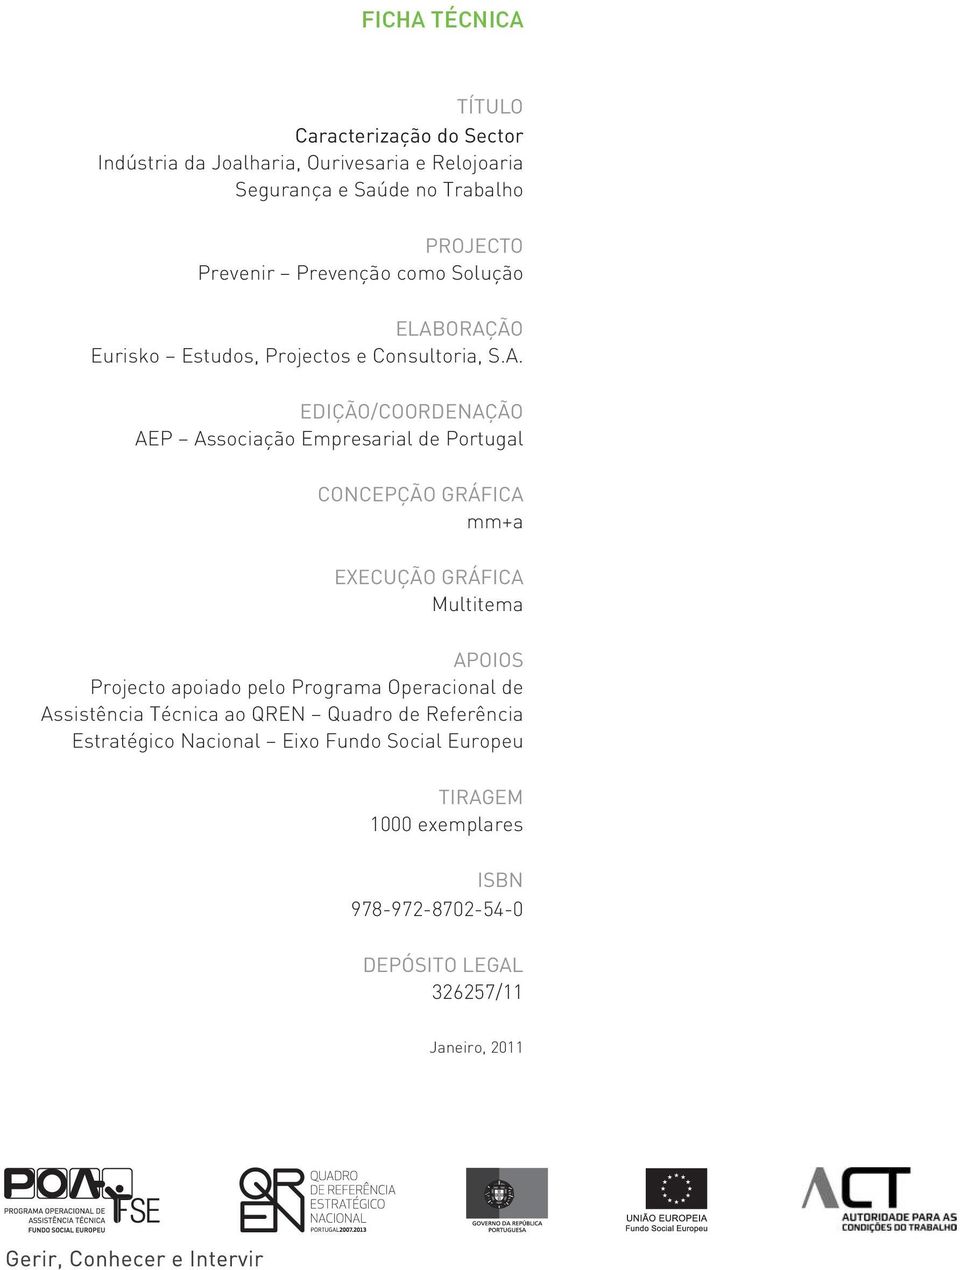 ORAÇÃO Eurisko Estudos, Projectos e Consultoria, S.A. EDIÇÃO/COORDENAÇÃO AEP Associação Empresarial de Portugal CONCEPÇÃO GRÁFICA mm+a